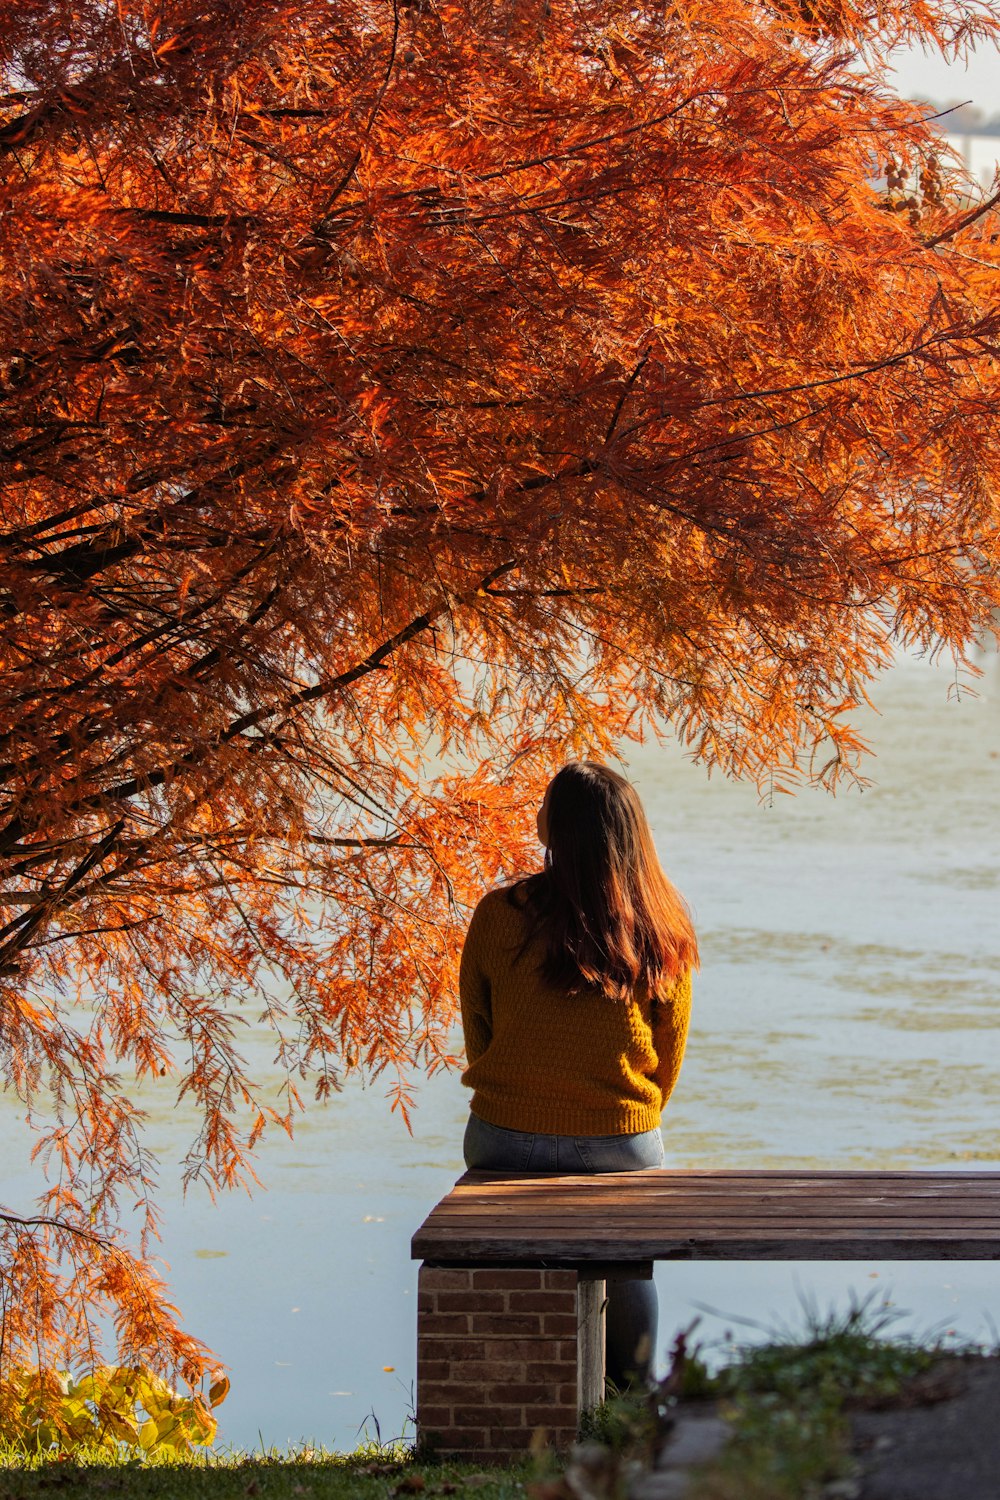 une personne assise sur un banc regardant un arbre avec des feuilles oranges